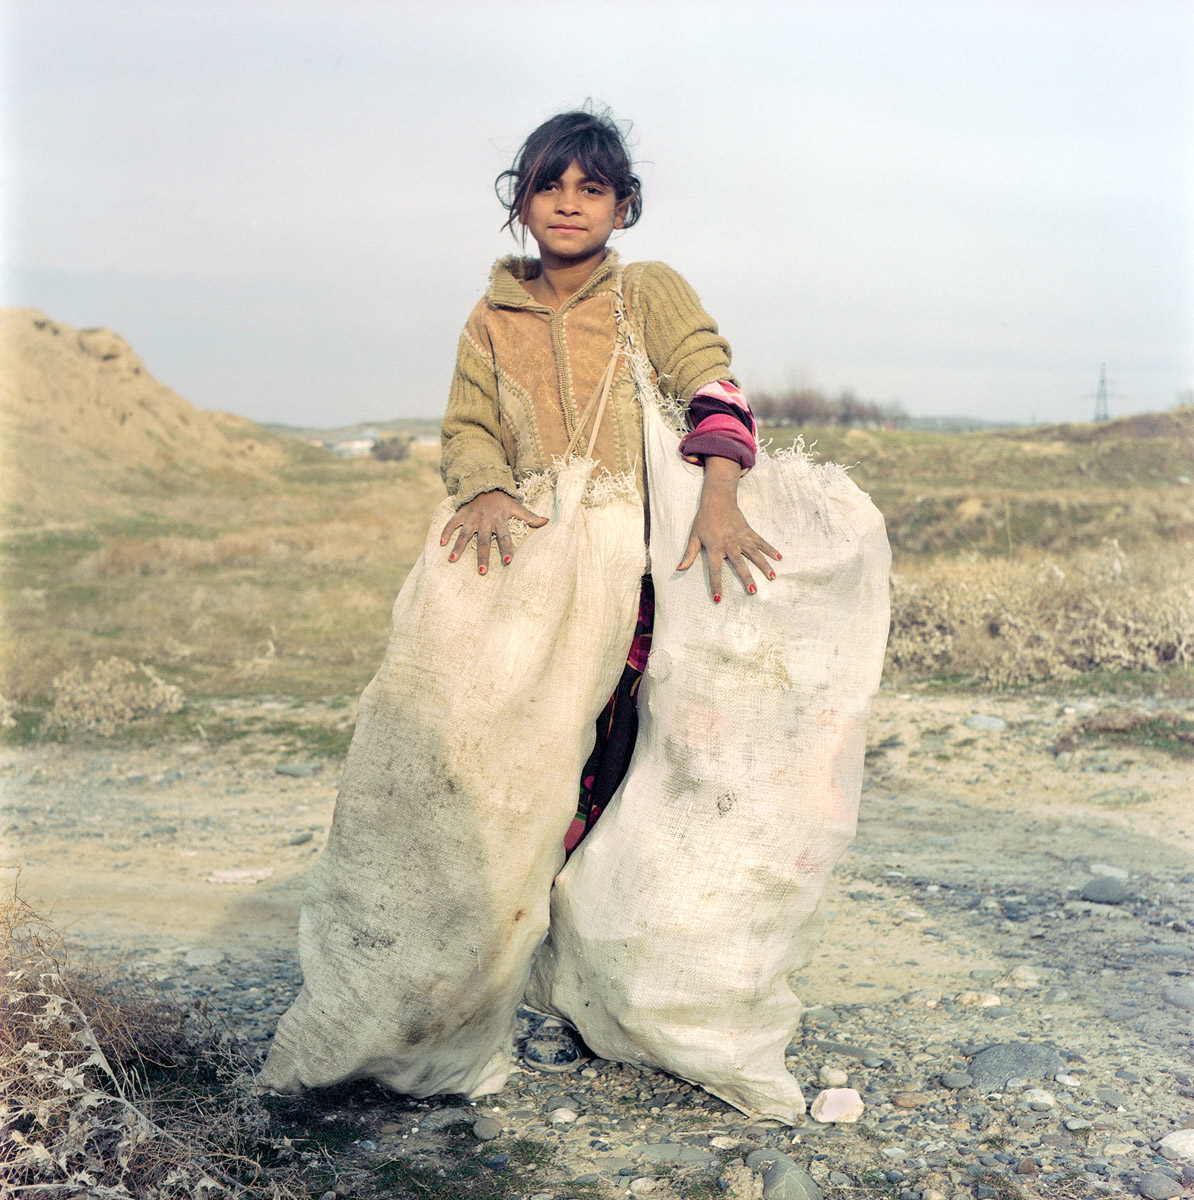 Luli (roma népcsoporthoz tartozó) kislány az üzbegisztáni Szamarkand külterületén